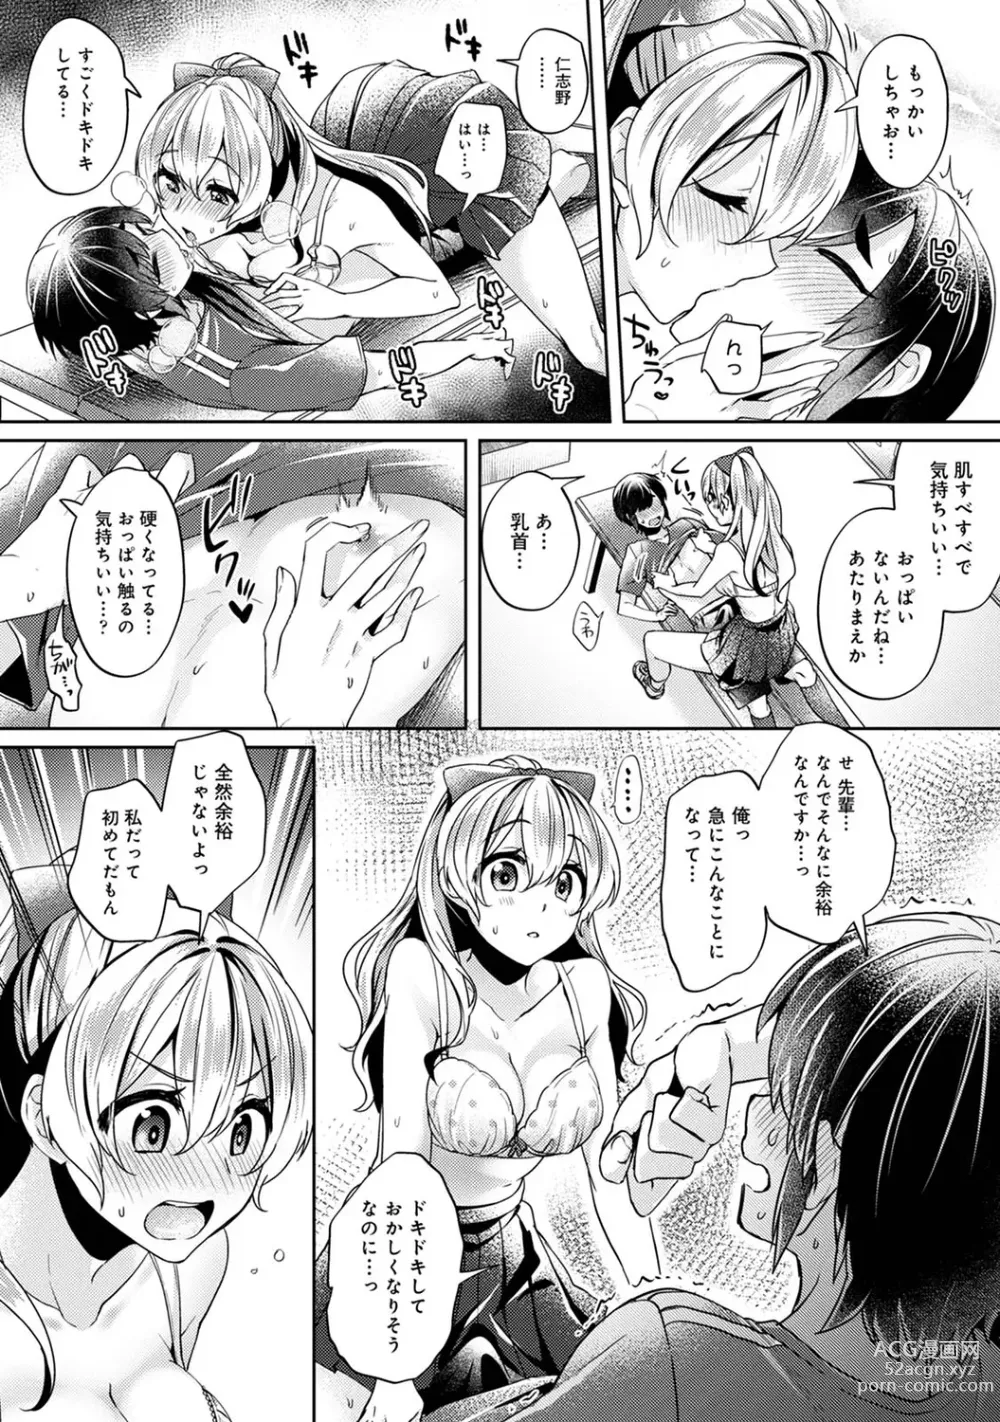 Page 14 of manga Suki Suki Diary